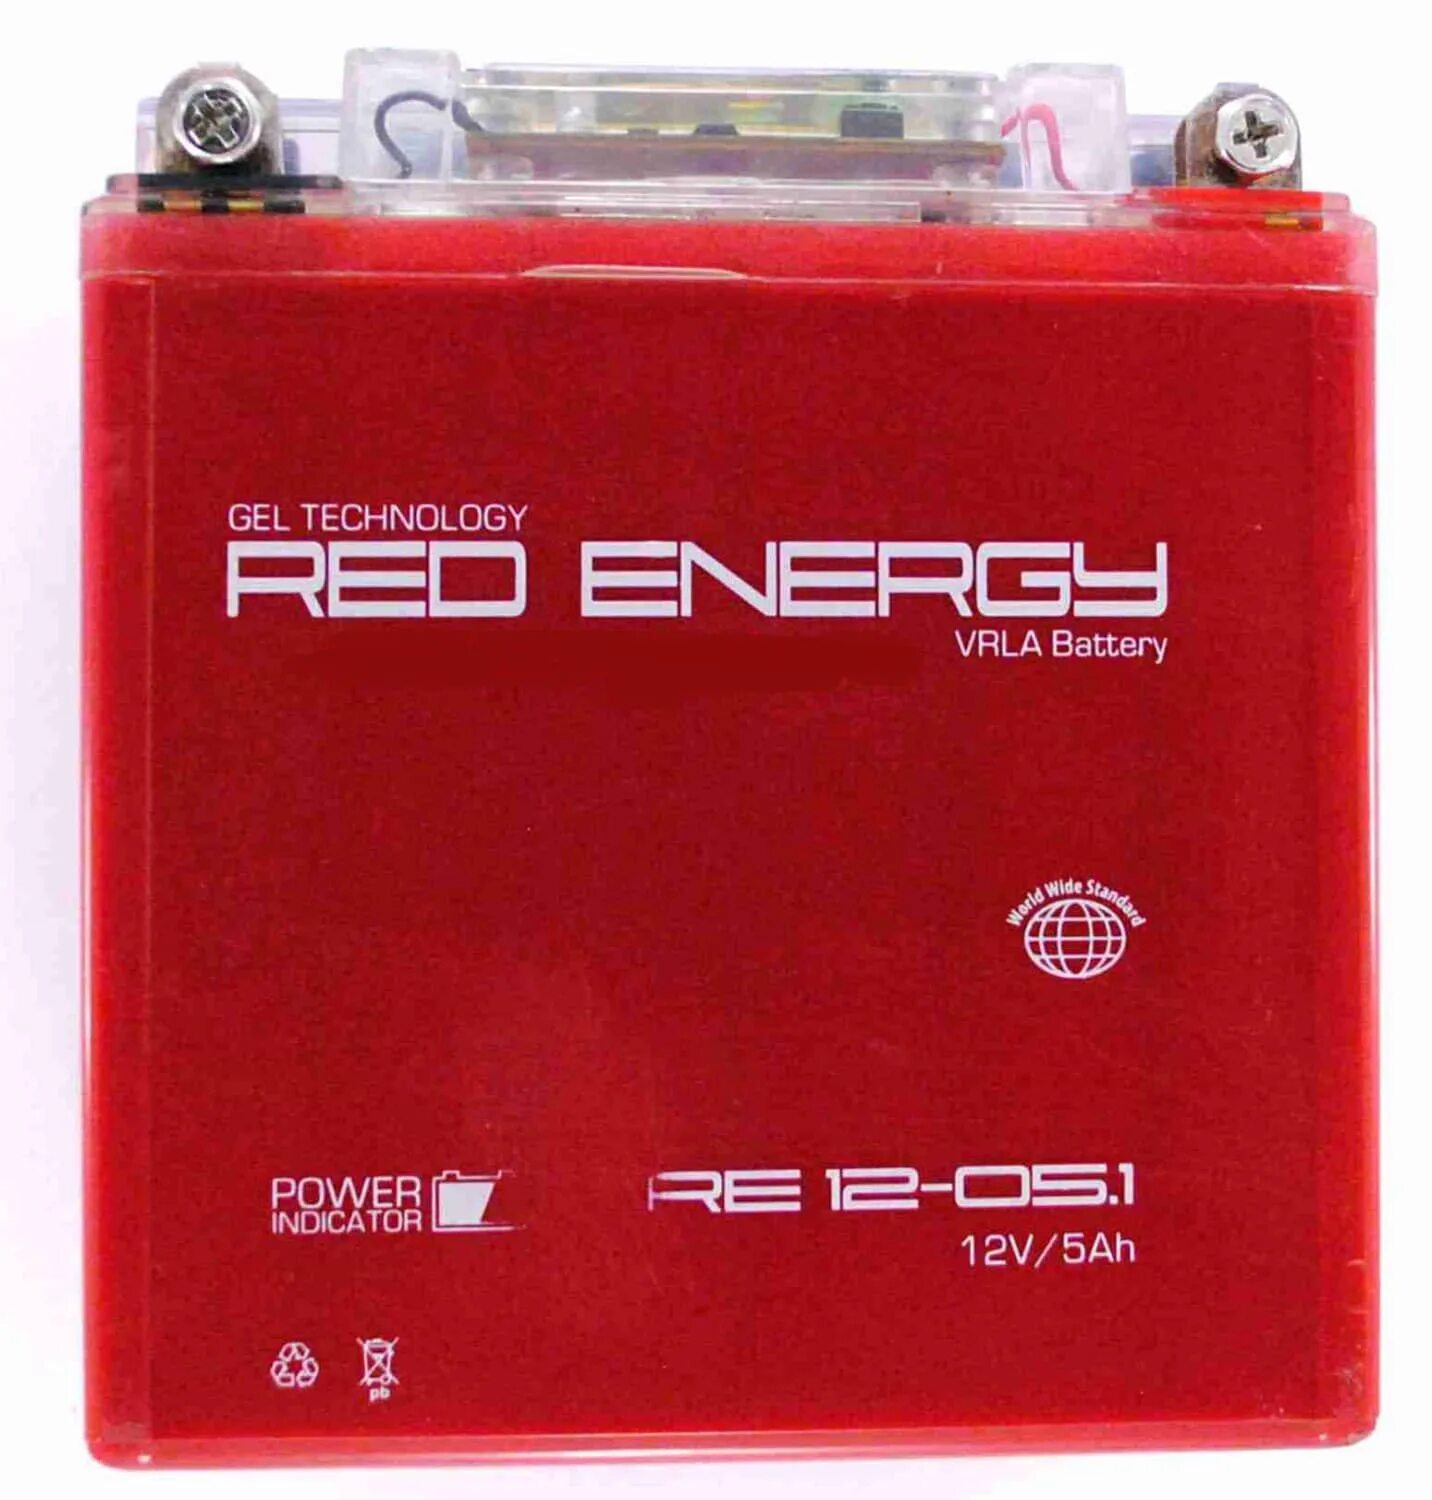 Аккумулятор energy 12v. Аккумулятор Red Energy 12v 5ah. Аккум Red Energy аккумулятор 12v. Аккумуляторная батарея Red Energy re 12-12. Аккумуляторная батарея ред Энерджи 14 Ач.